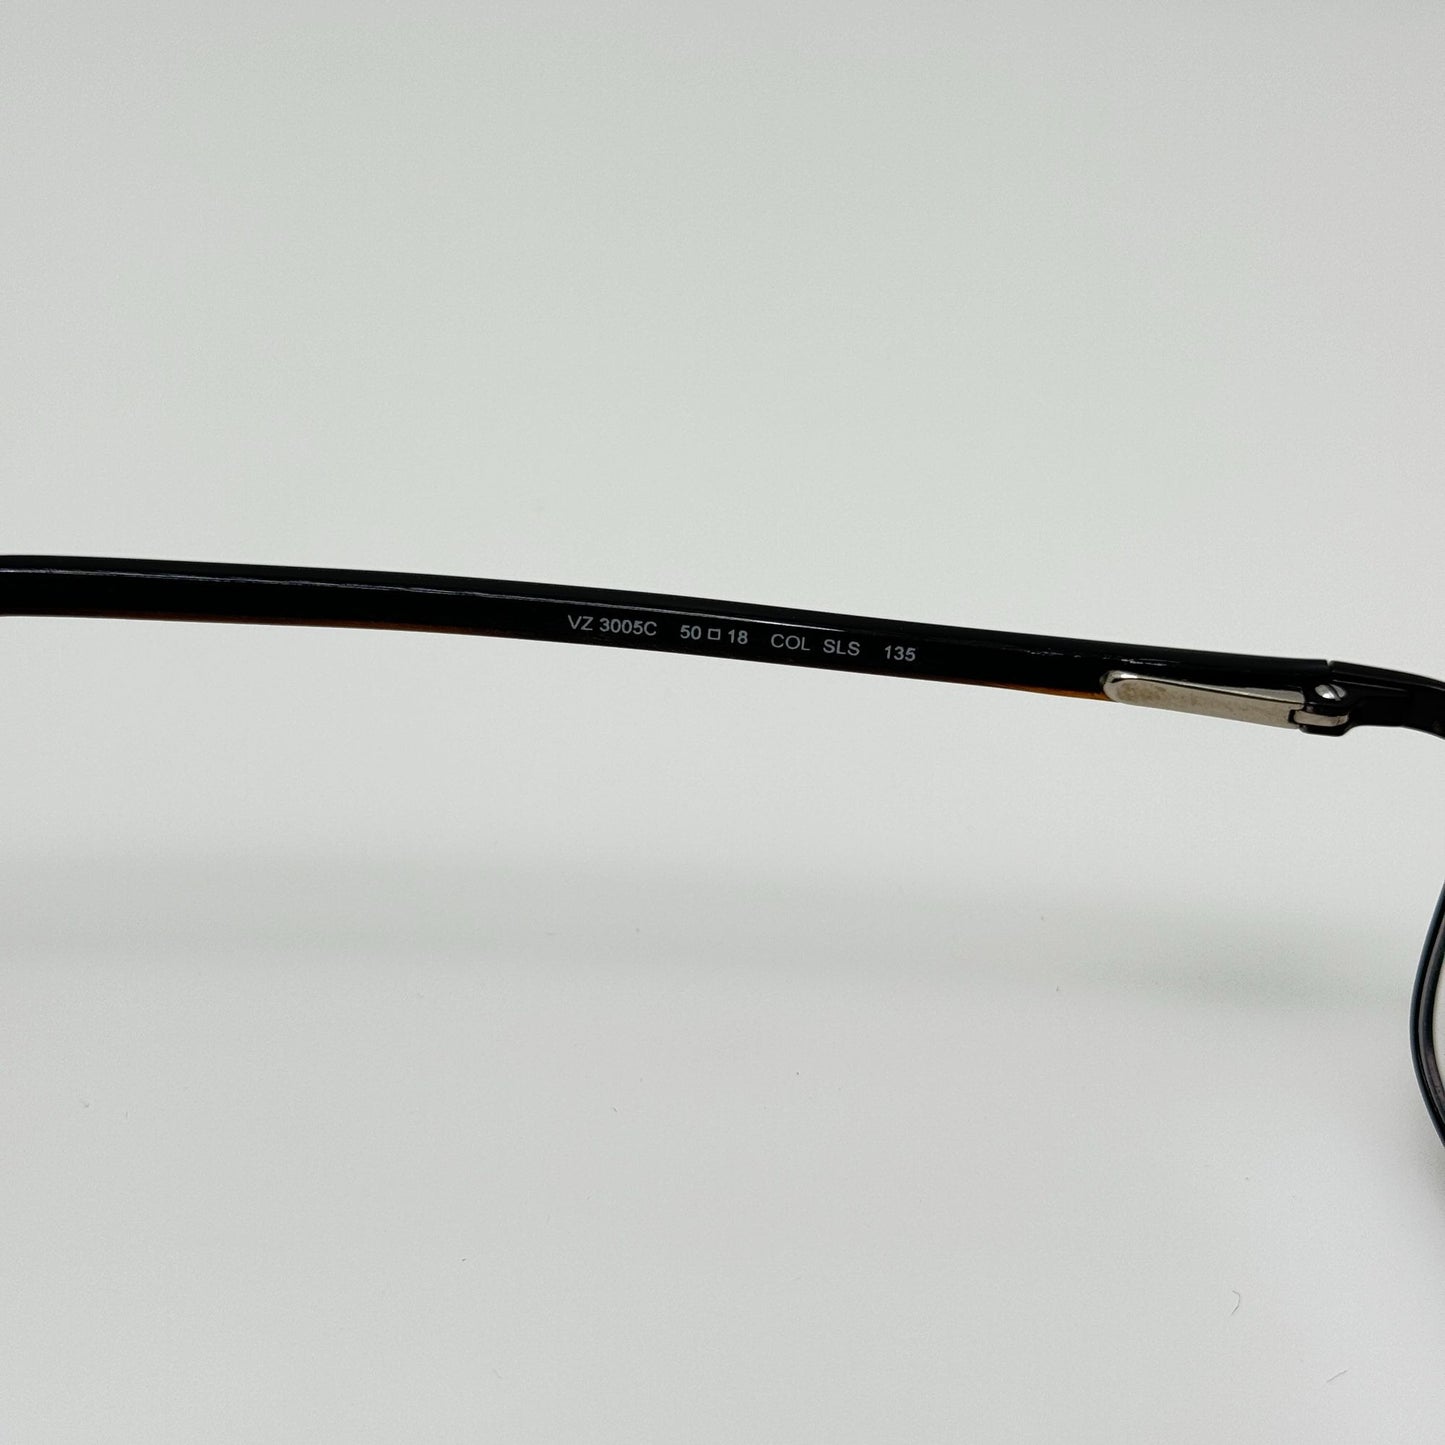 Ermenegildo Zegna Eyeglasses Eye Glasses Frames VZ 3005C 50-18-135 Col SLS